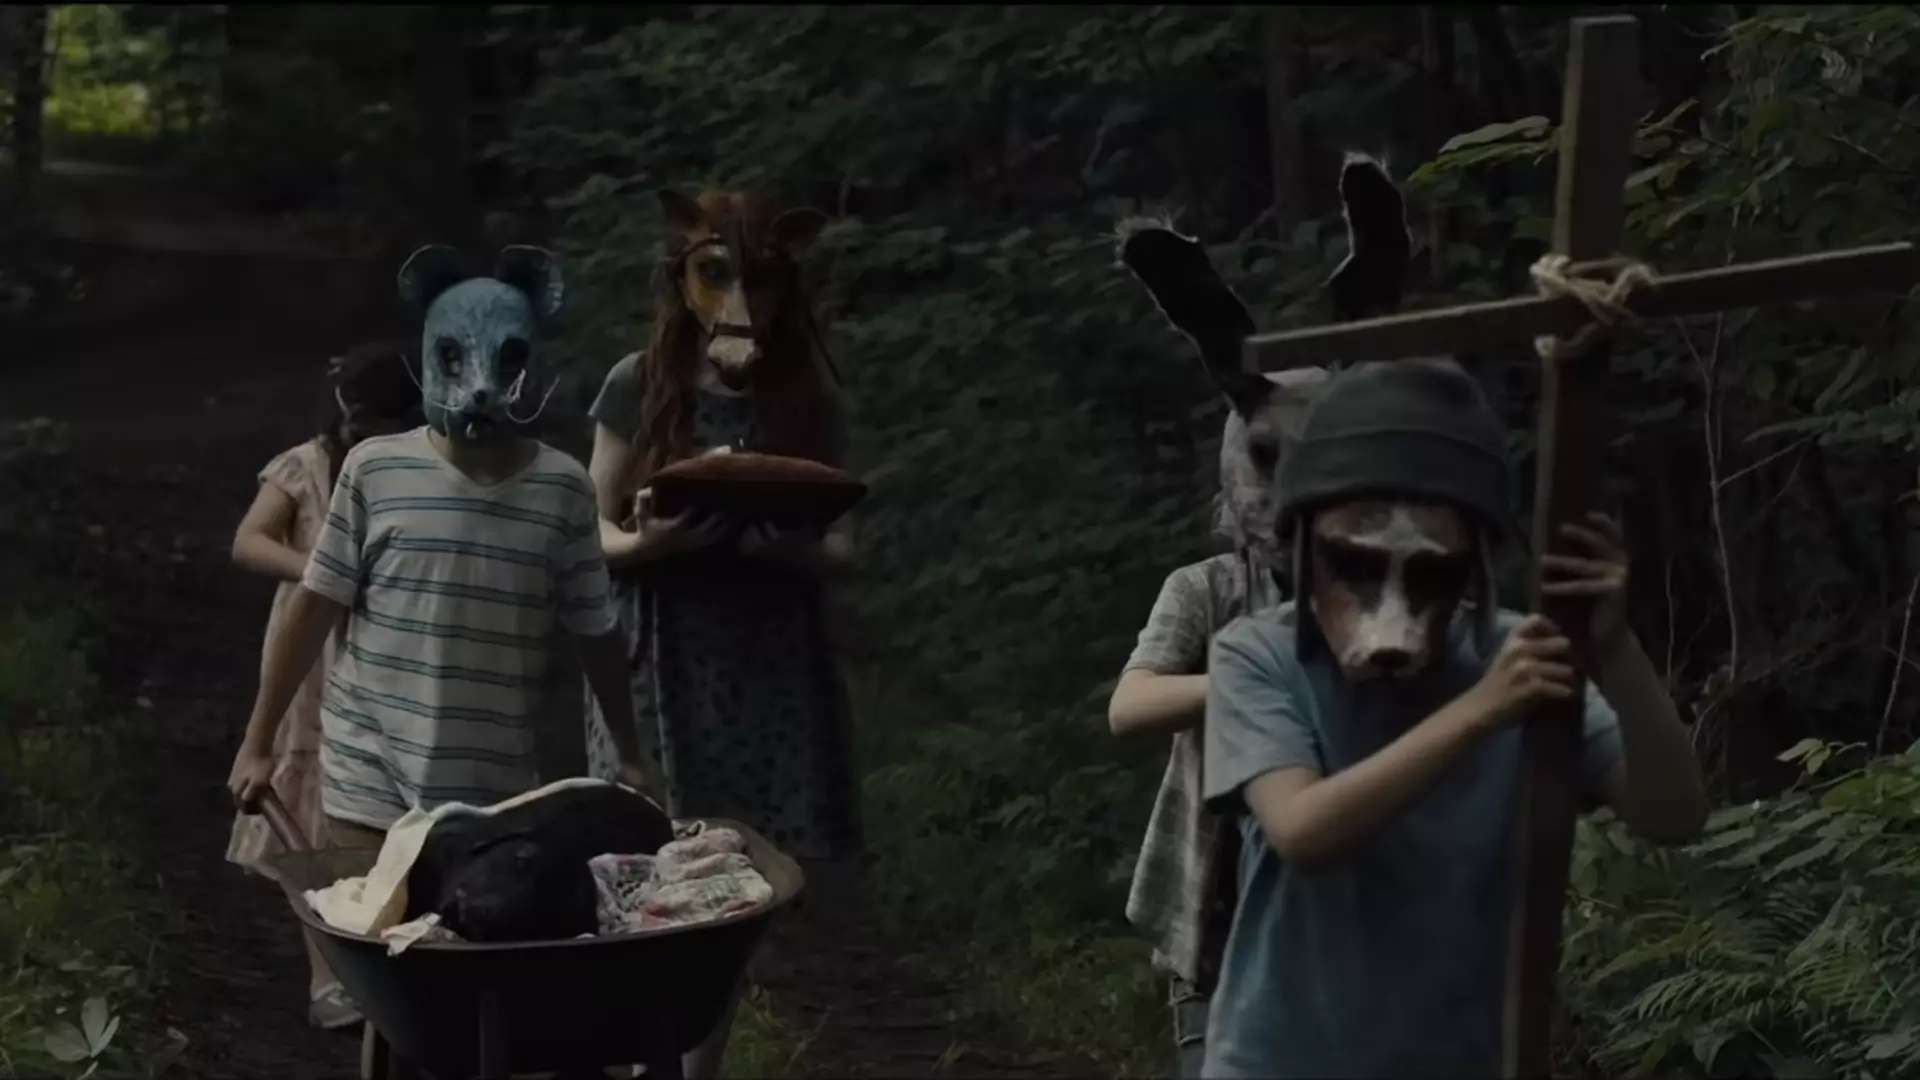 Martwe zwierzaki, dzieci i siły nieczyste - przepis na horror idealny w trailerze "Smętarza dla zwierzaków"